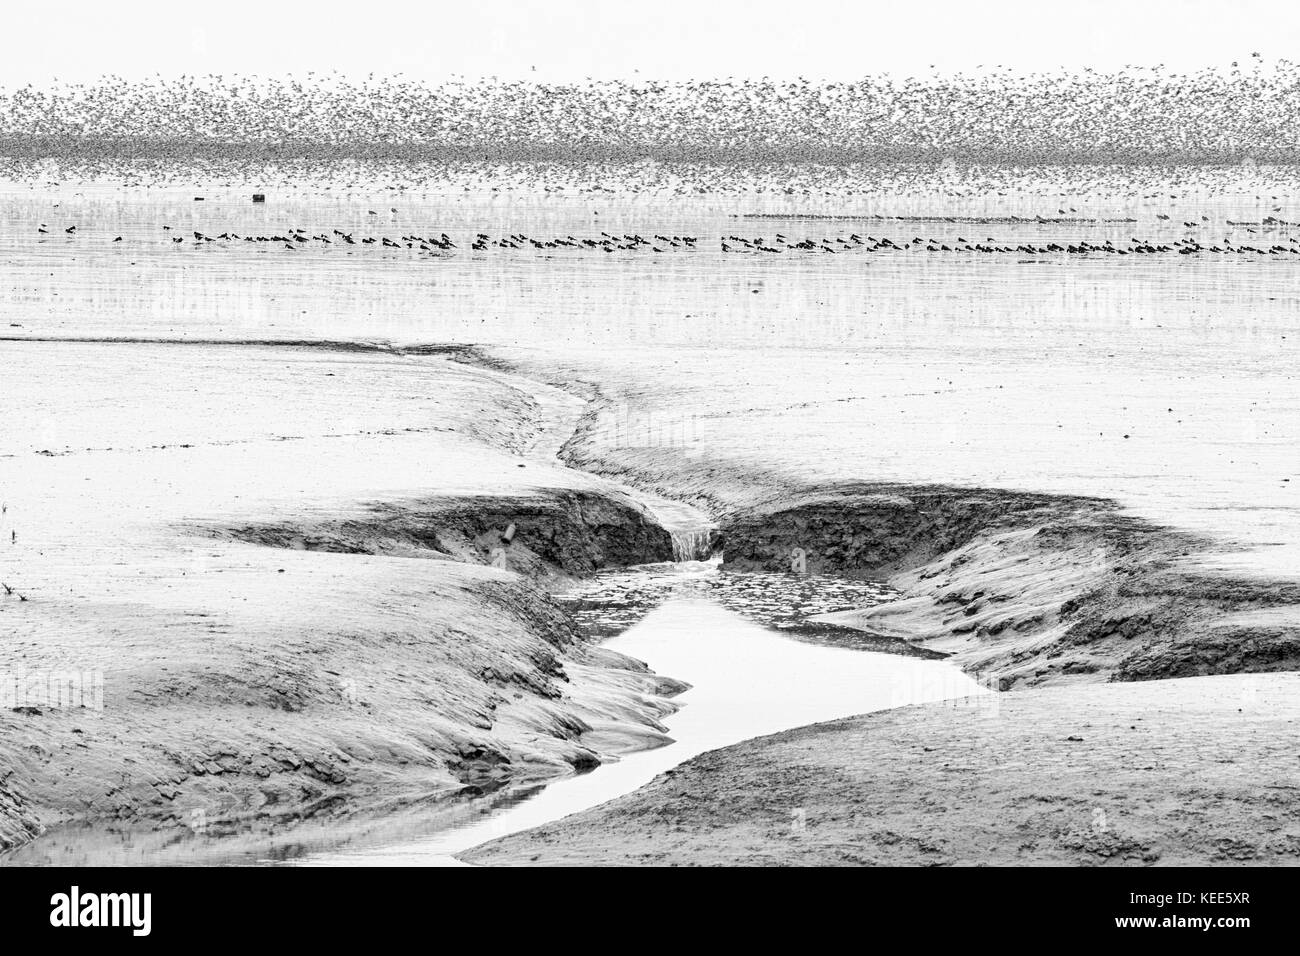 Waders principalement au noeud et Oystewrcatcher sur le laver à marée basse vue de la réserve RSPB Snettisham Norfolk Août Banque D'Images